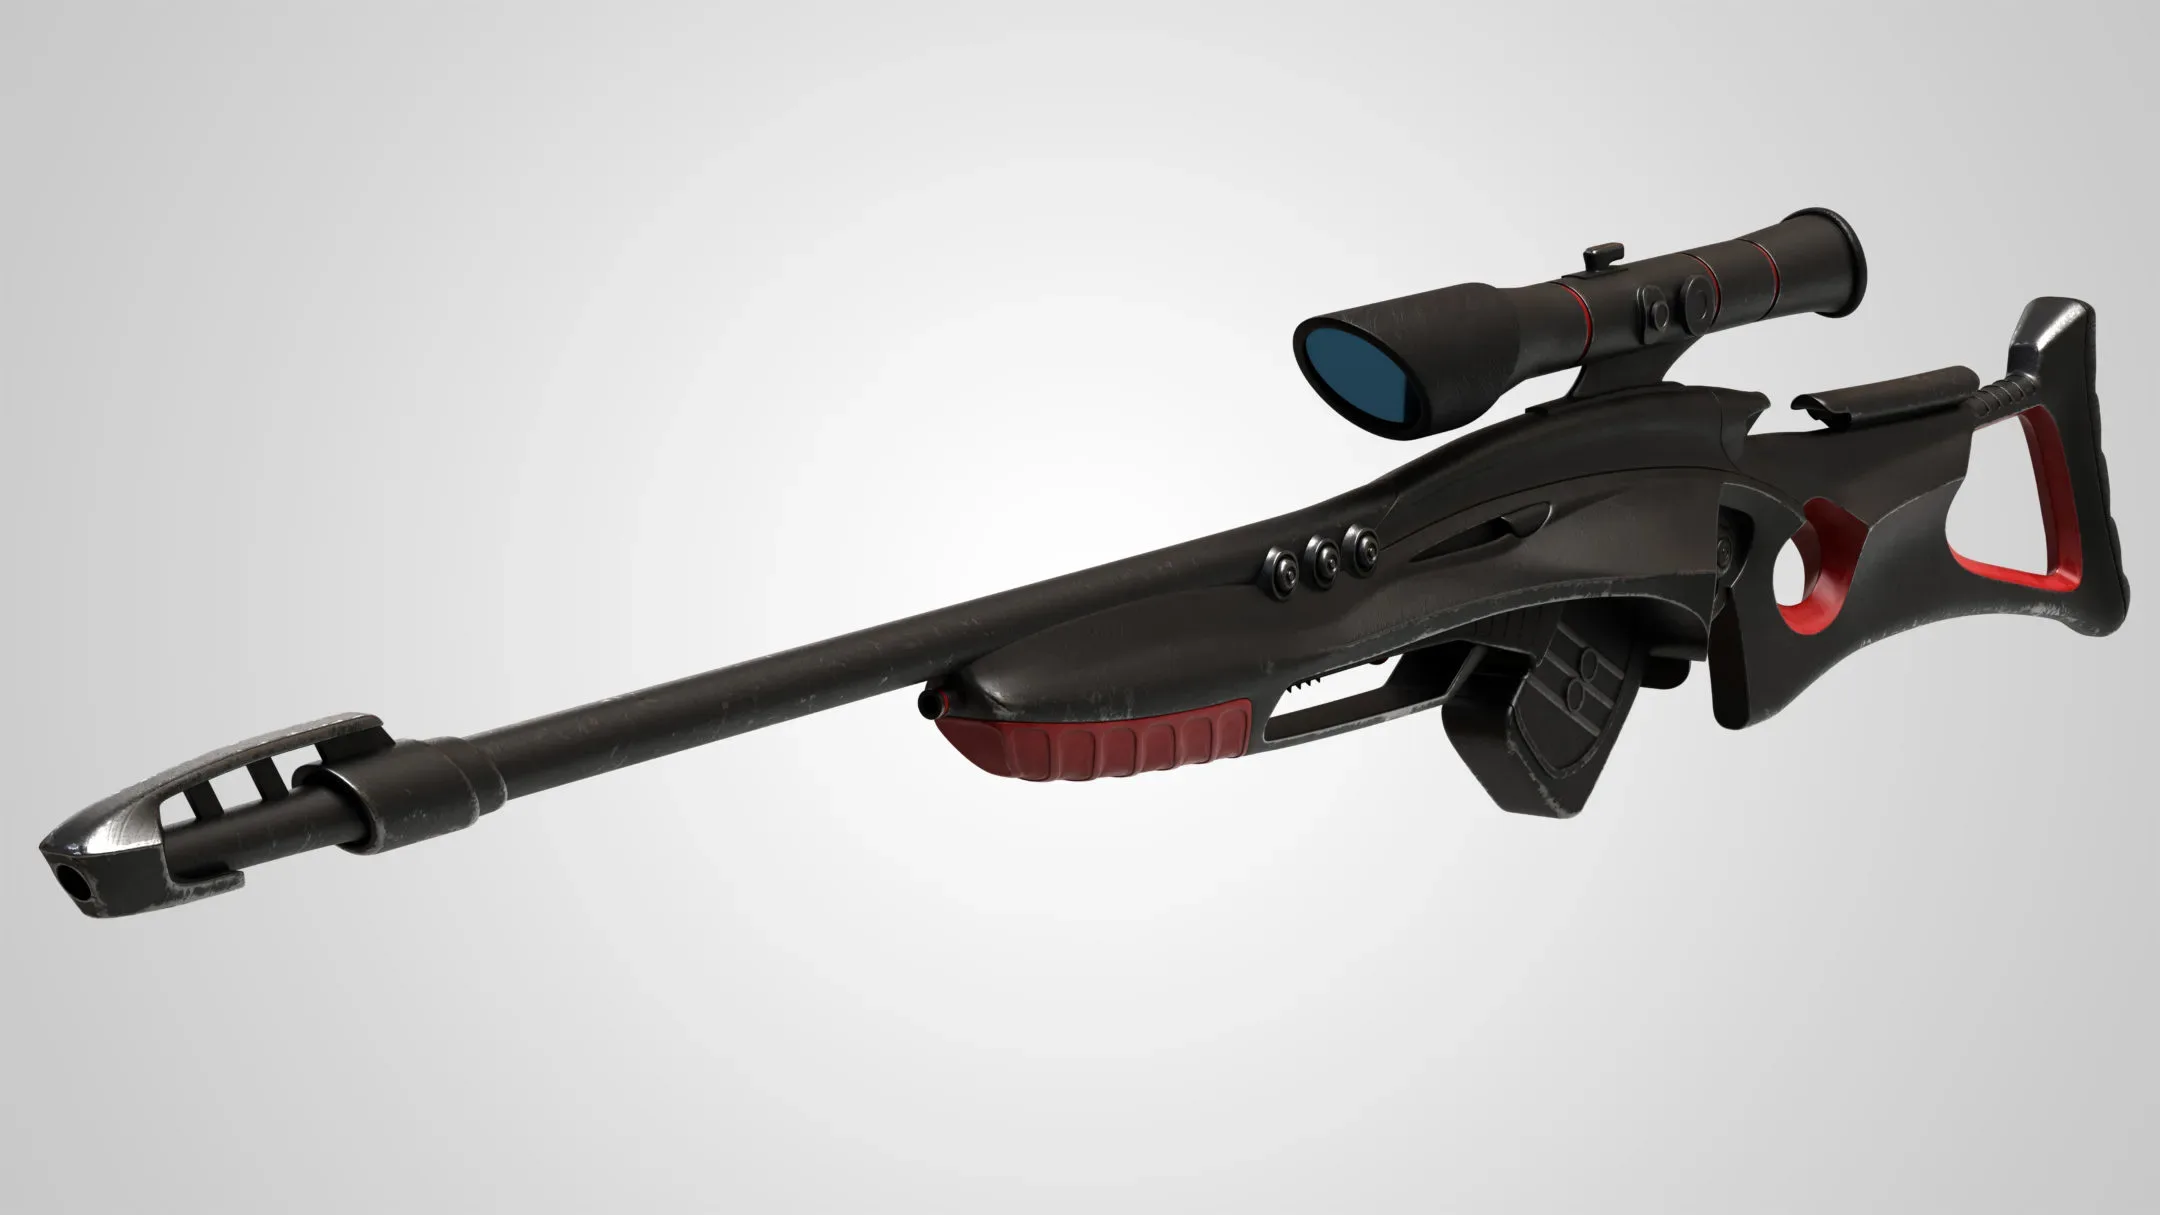 Sci-Fi Sniper Rifle 03